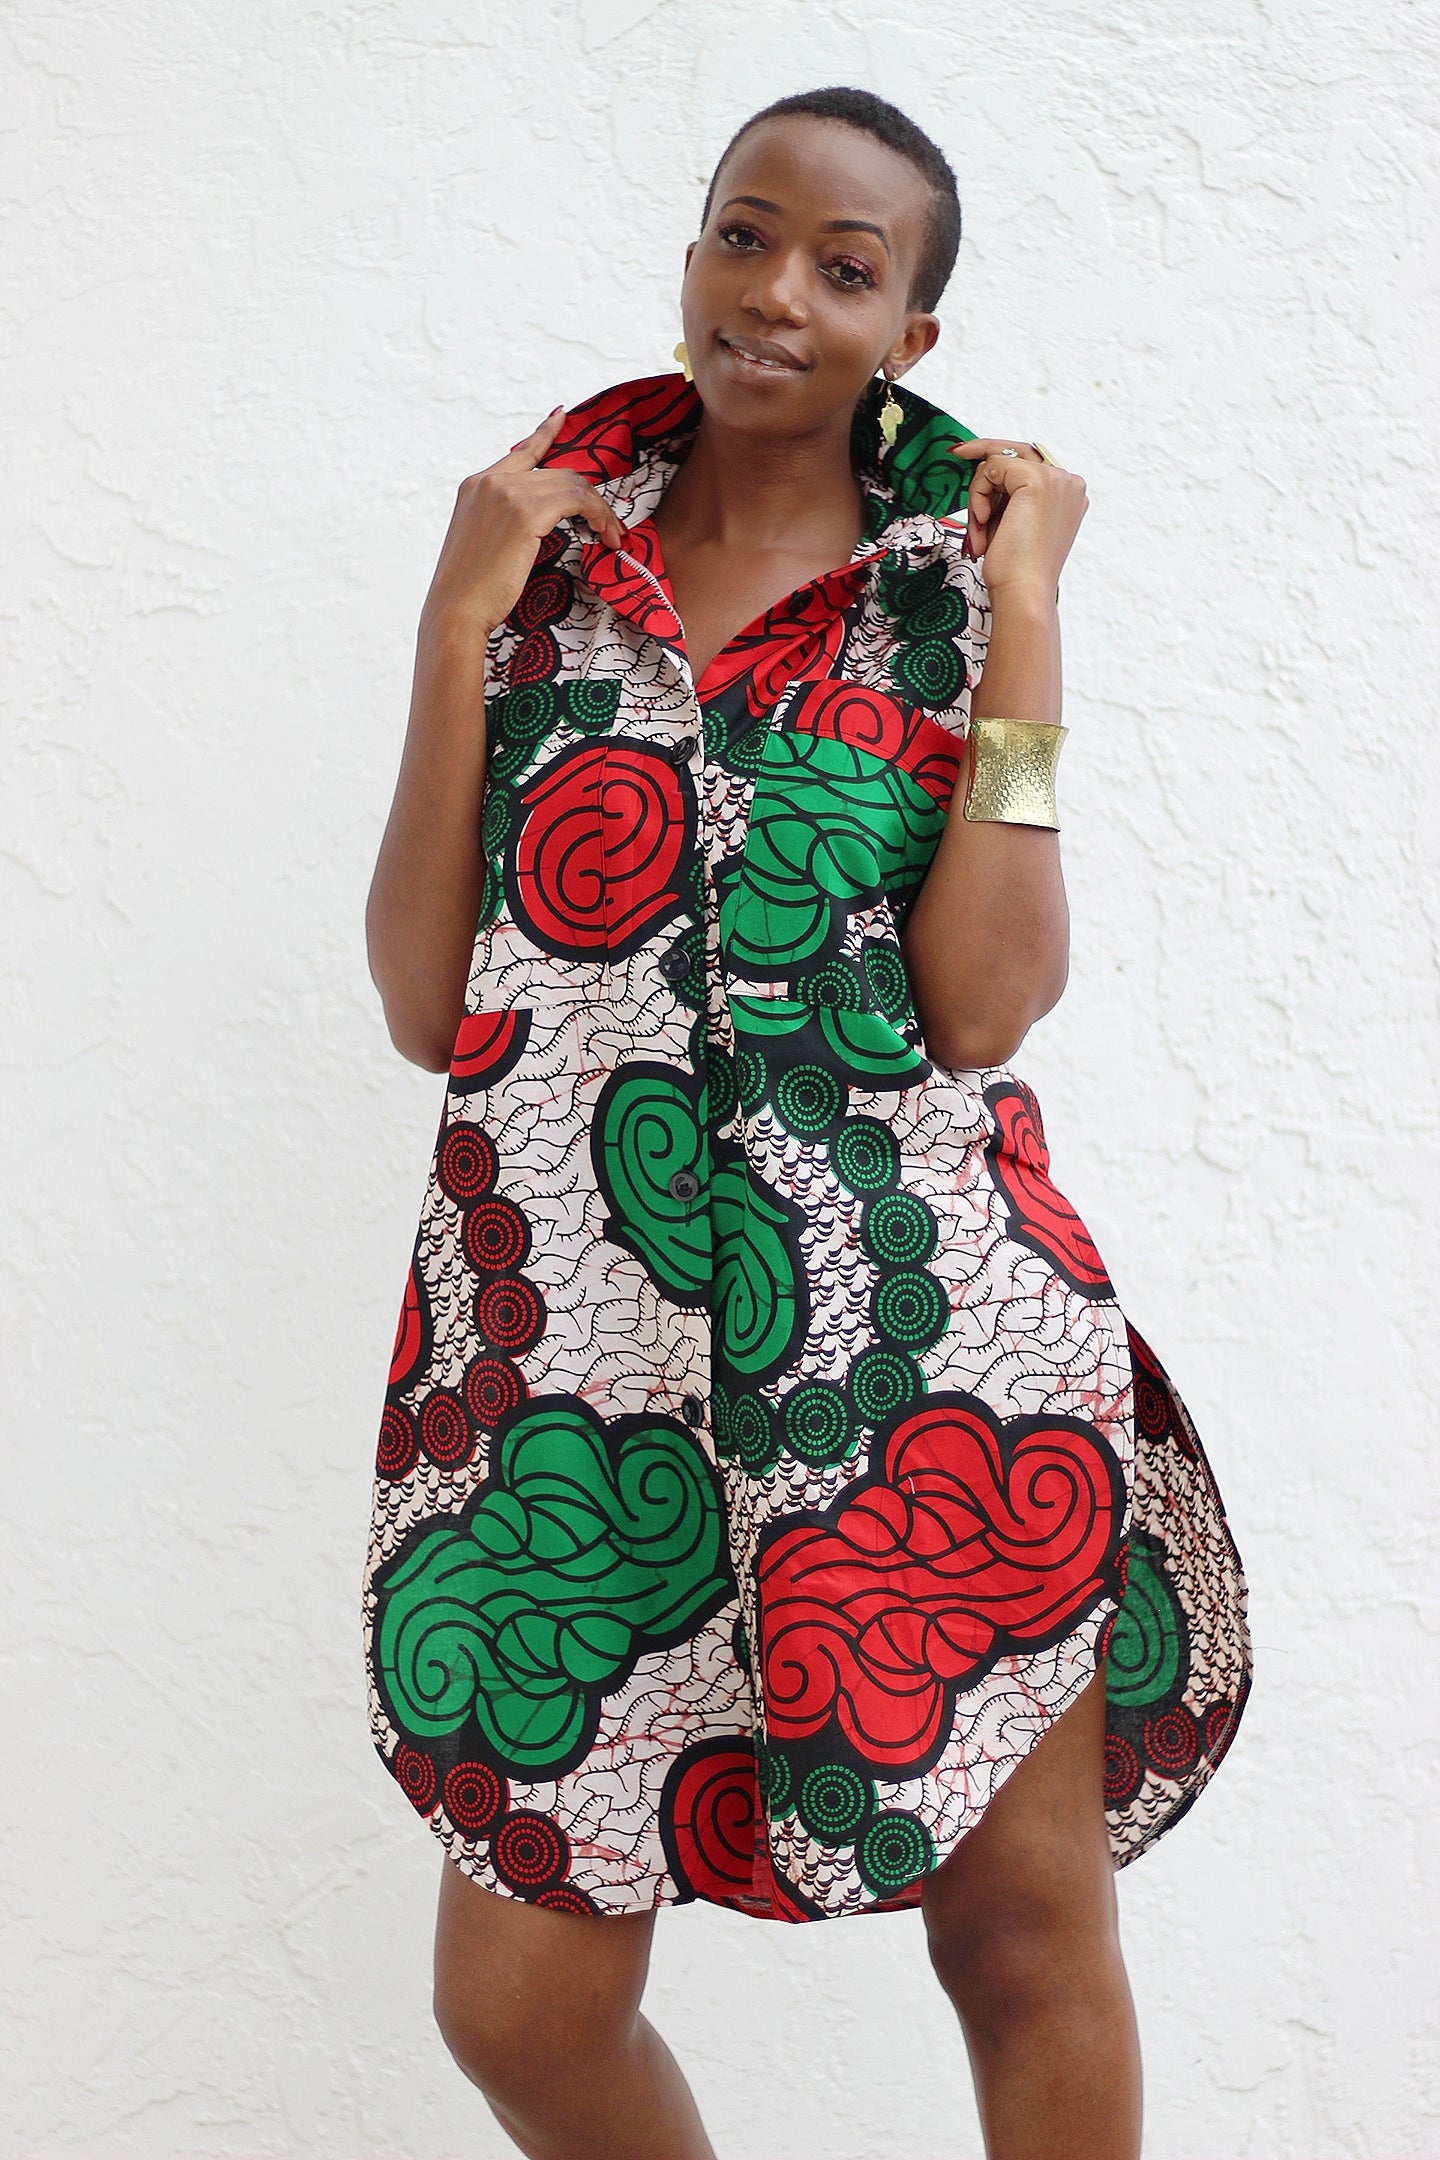 African Print /Ankara/Kitenge Short Sleeve Crop Top – Africas Closet